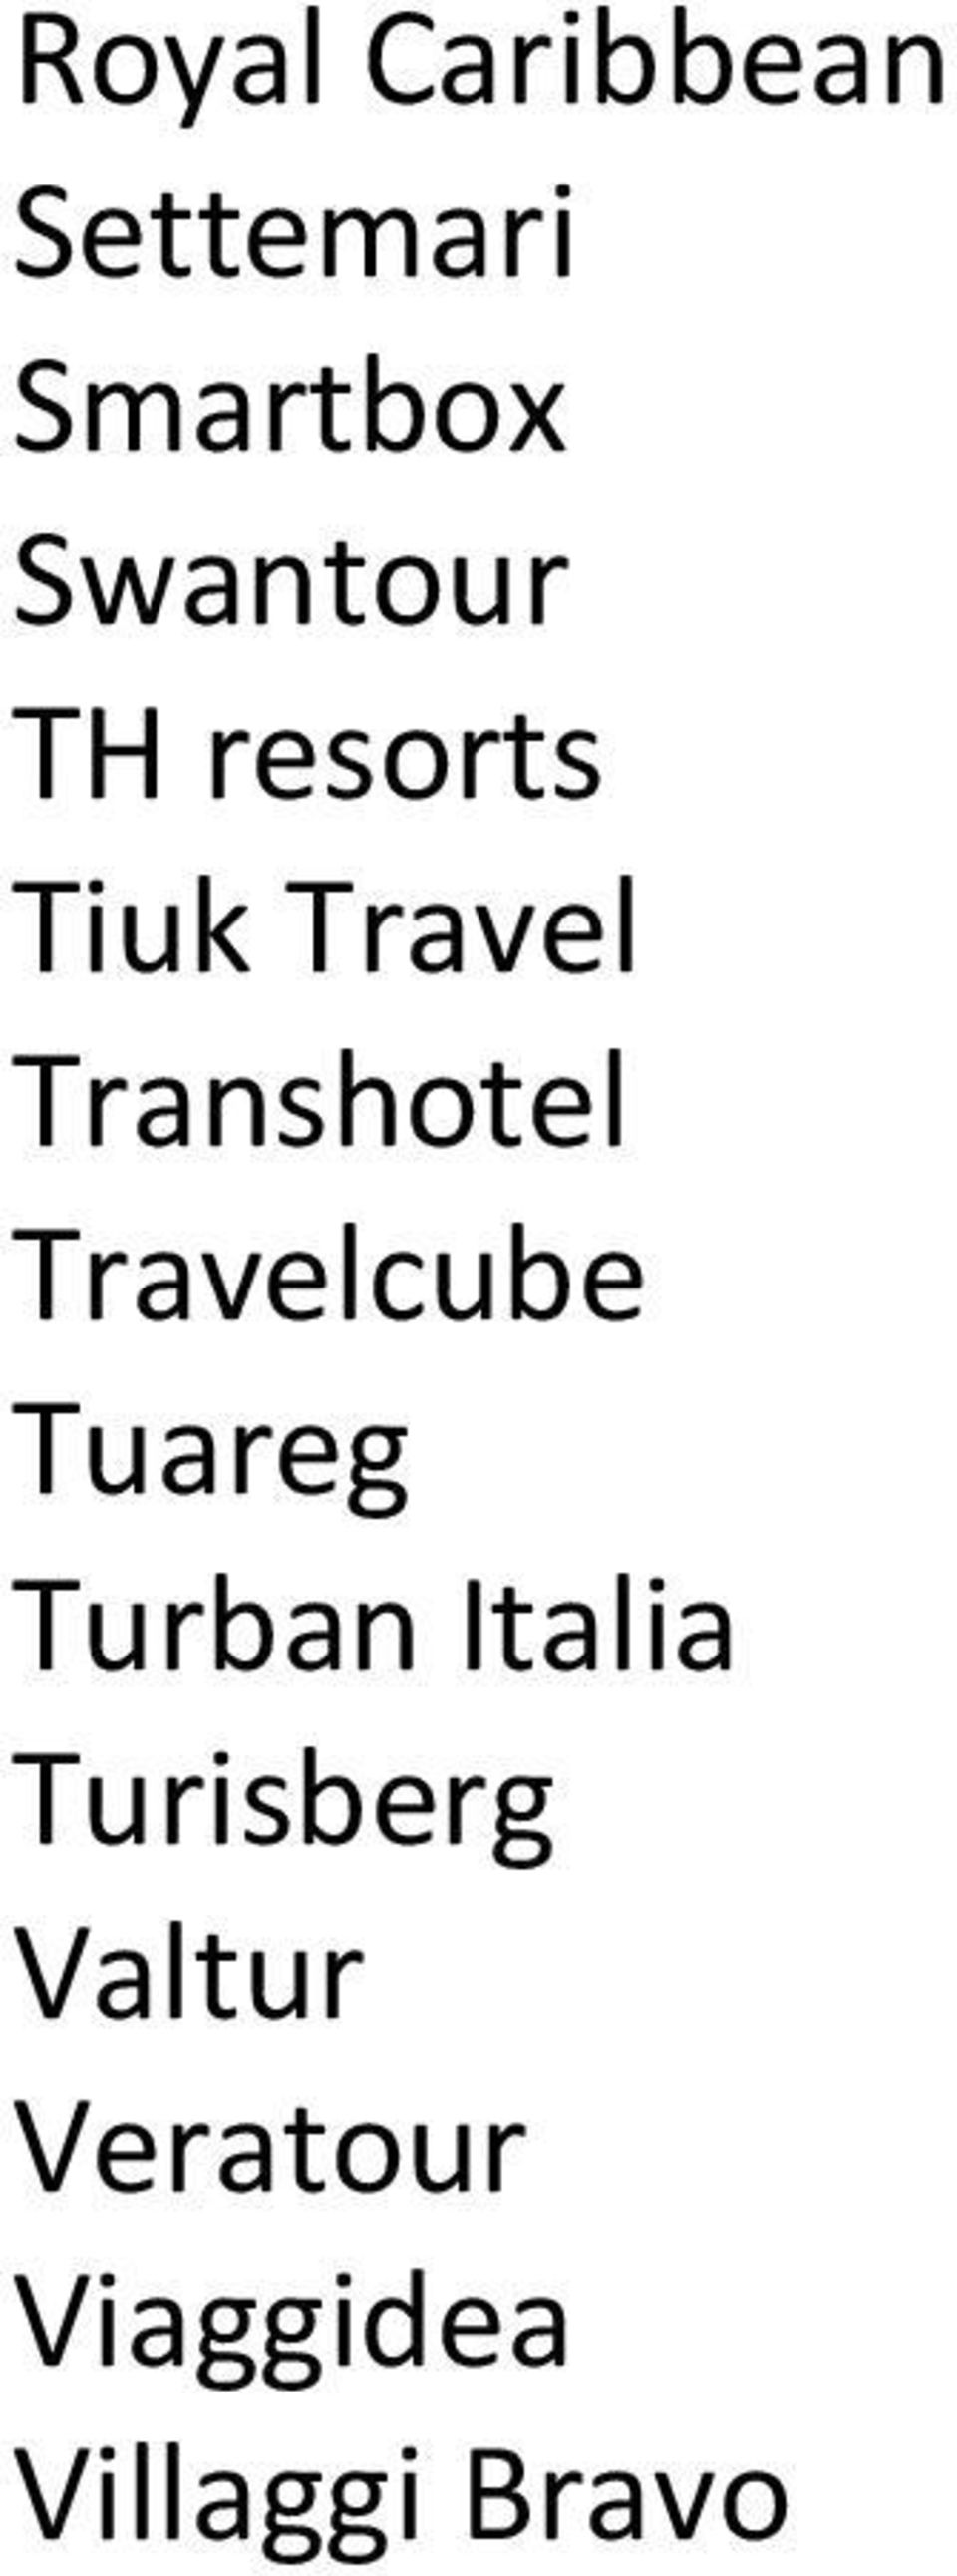 Transhotel Travelcube Tuareg Turban